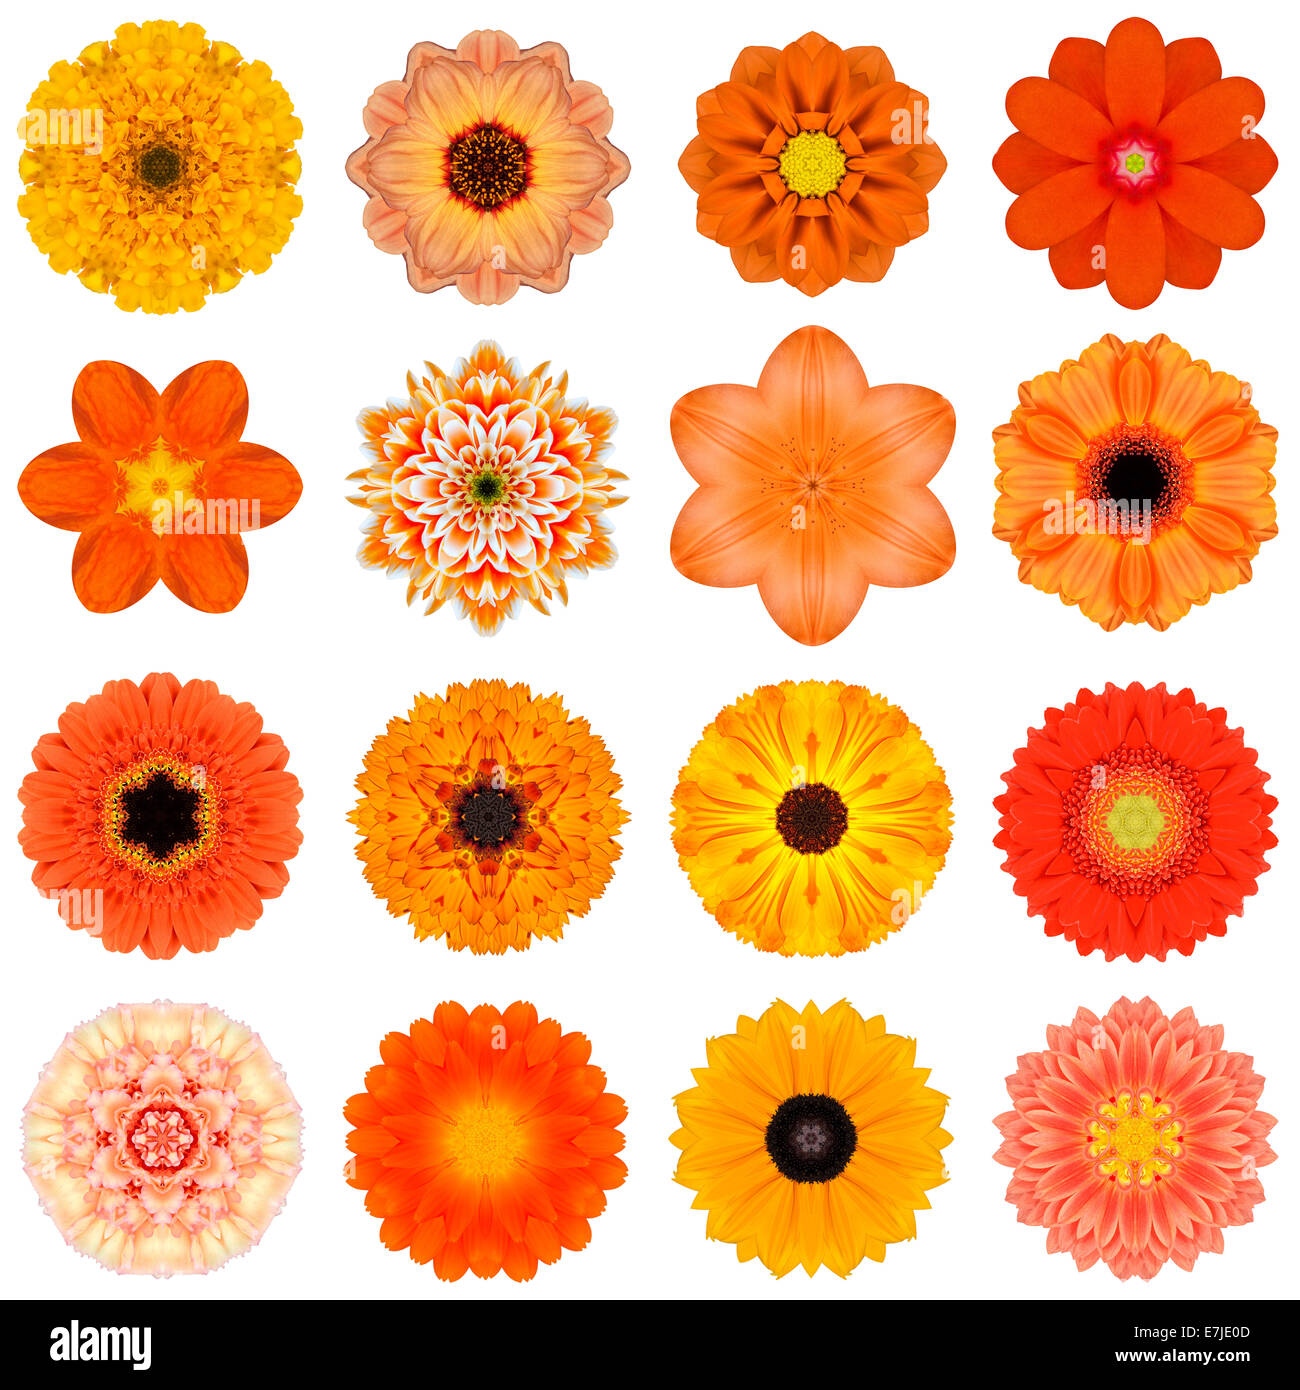 Große Sammlung von verschiedenen Orange konzentrische Muster Blumen. Kaleidoskopische Mandala-Muster, Isolated on White Background. Konzen Stockfoto